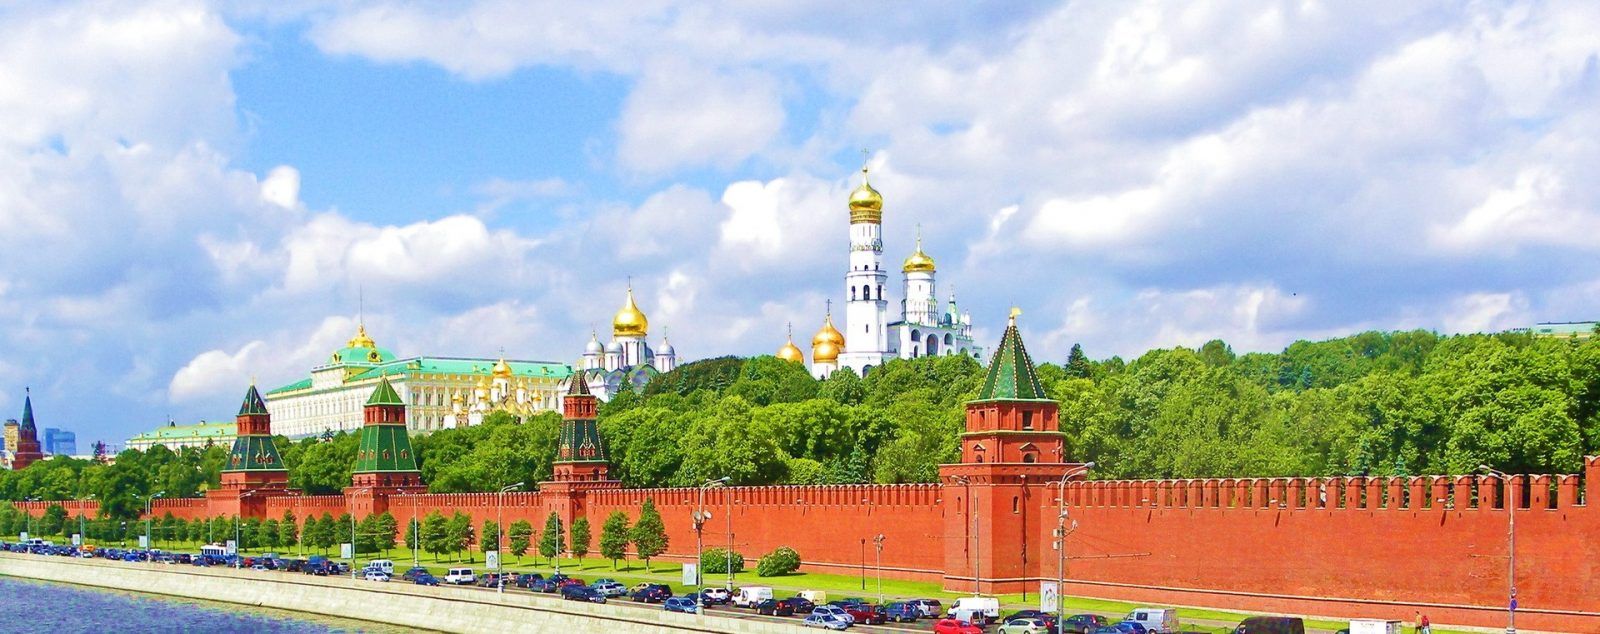 Ренессанс в России - это Московский кремль...